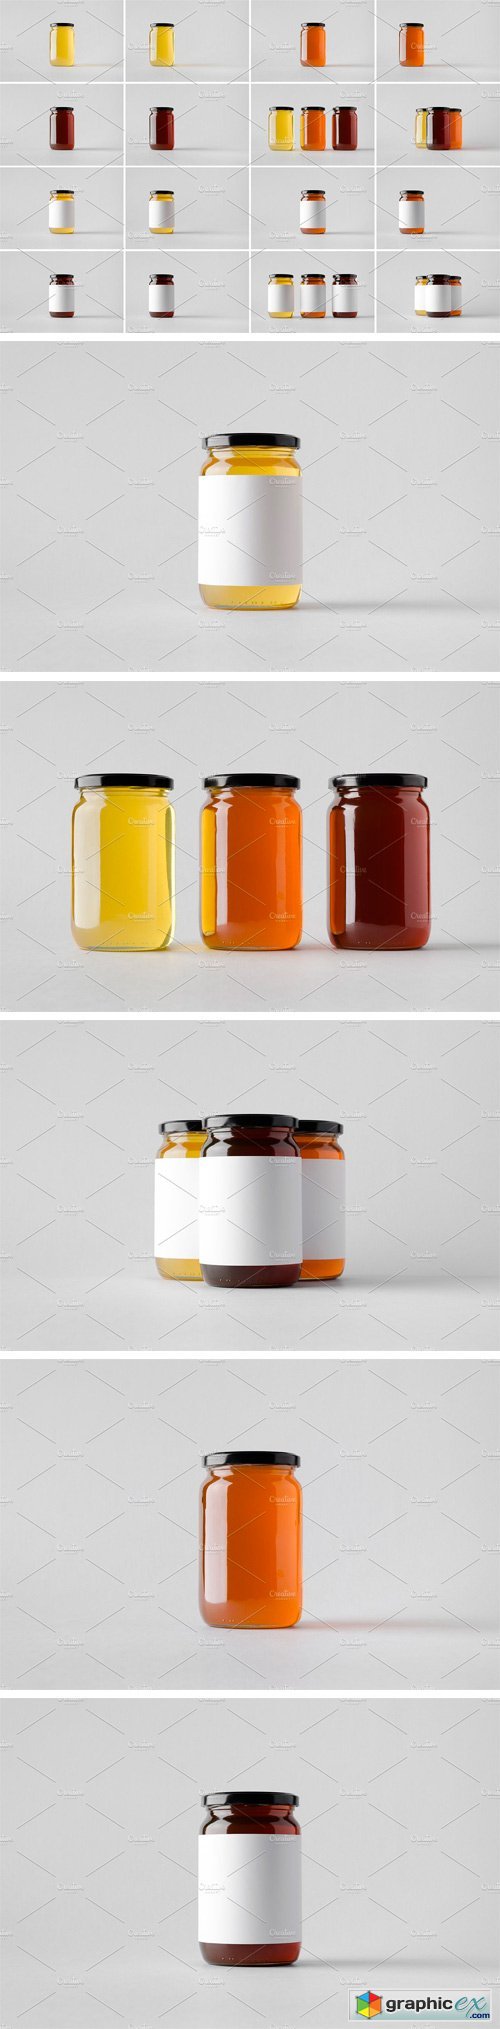 Honey Jar Mock-Up Stock Photo Bundle